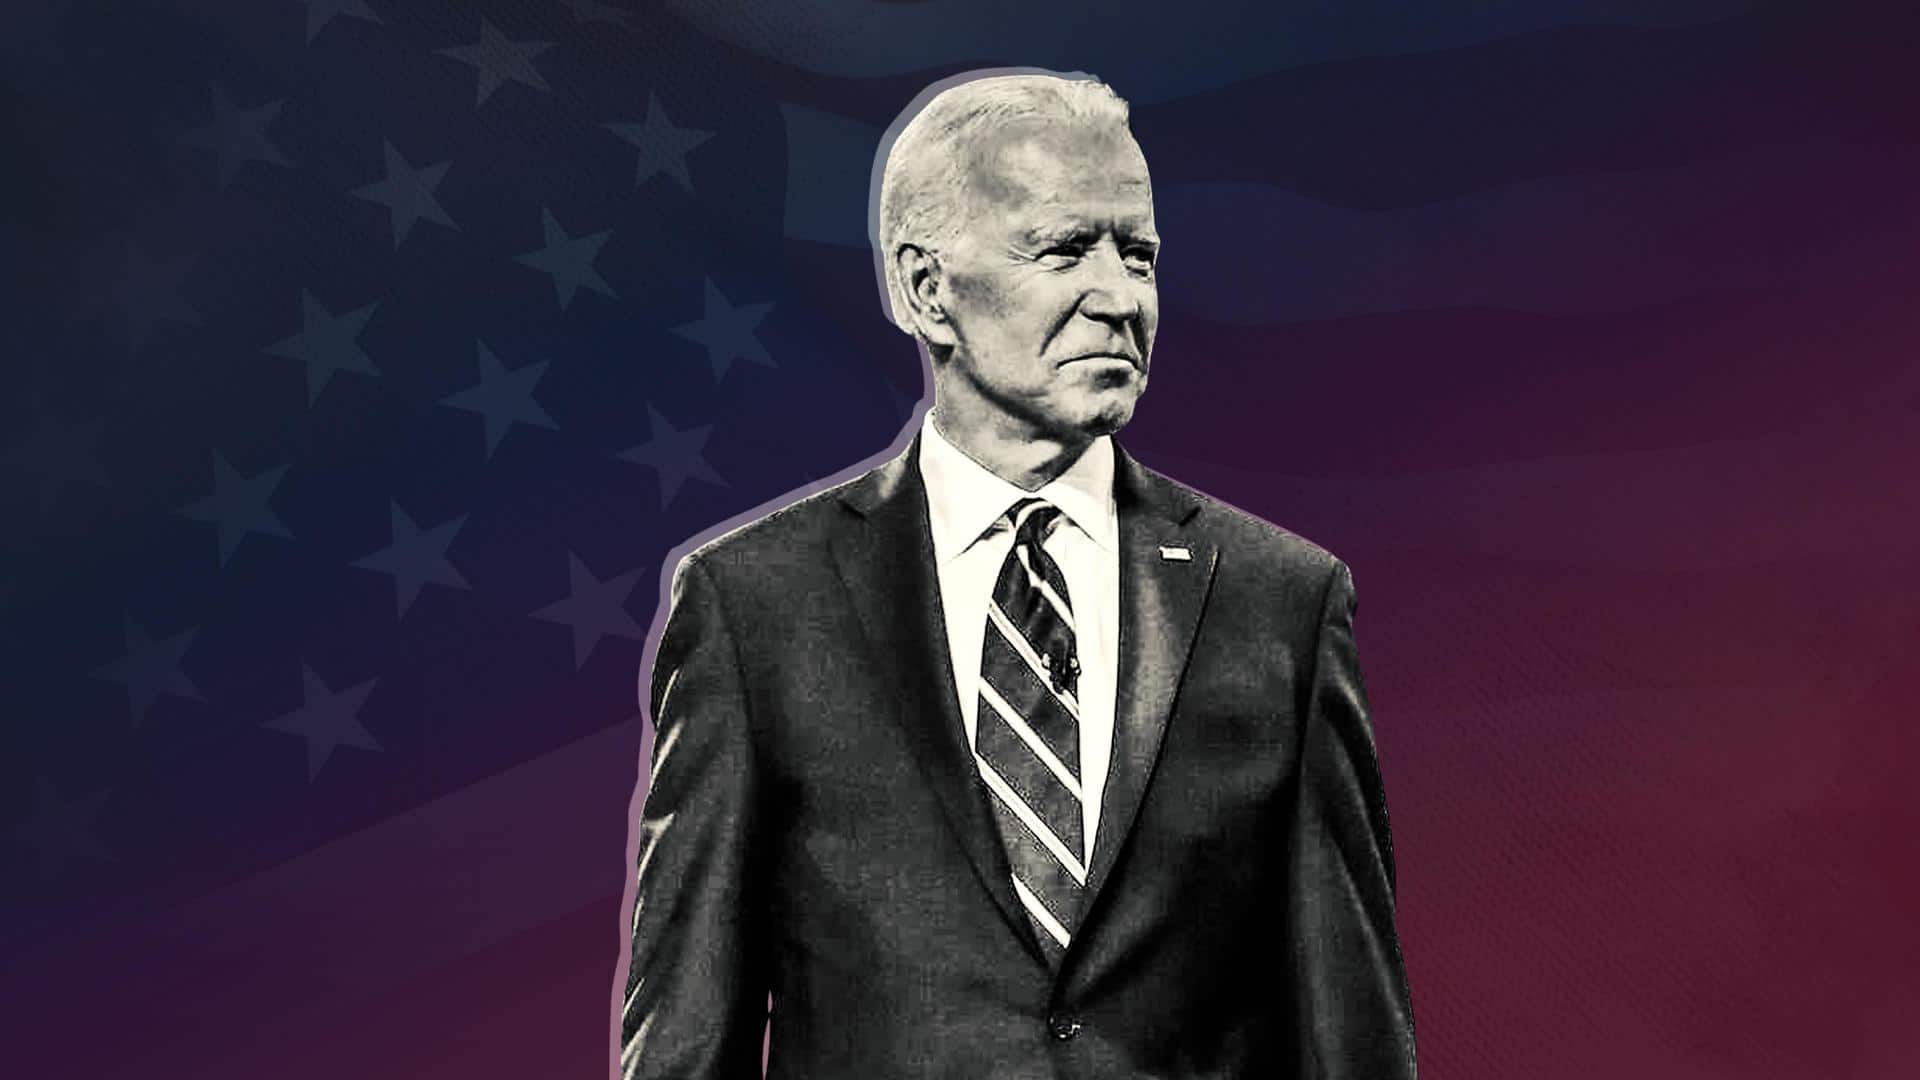 Joe Biden has had 'so much plastic surgery': Republican leader